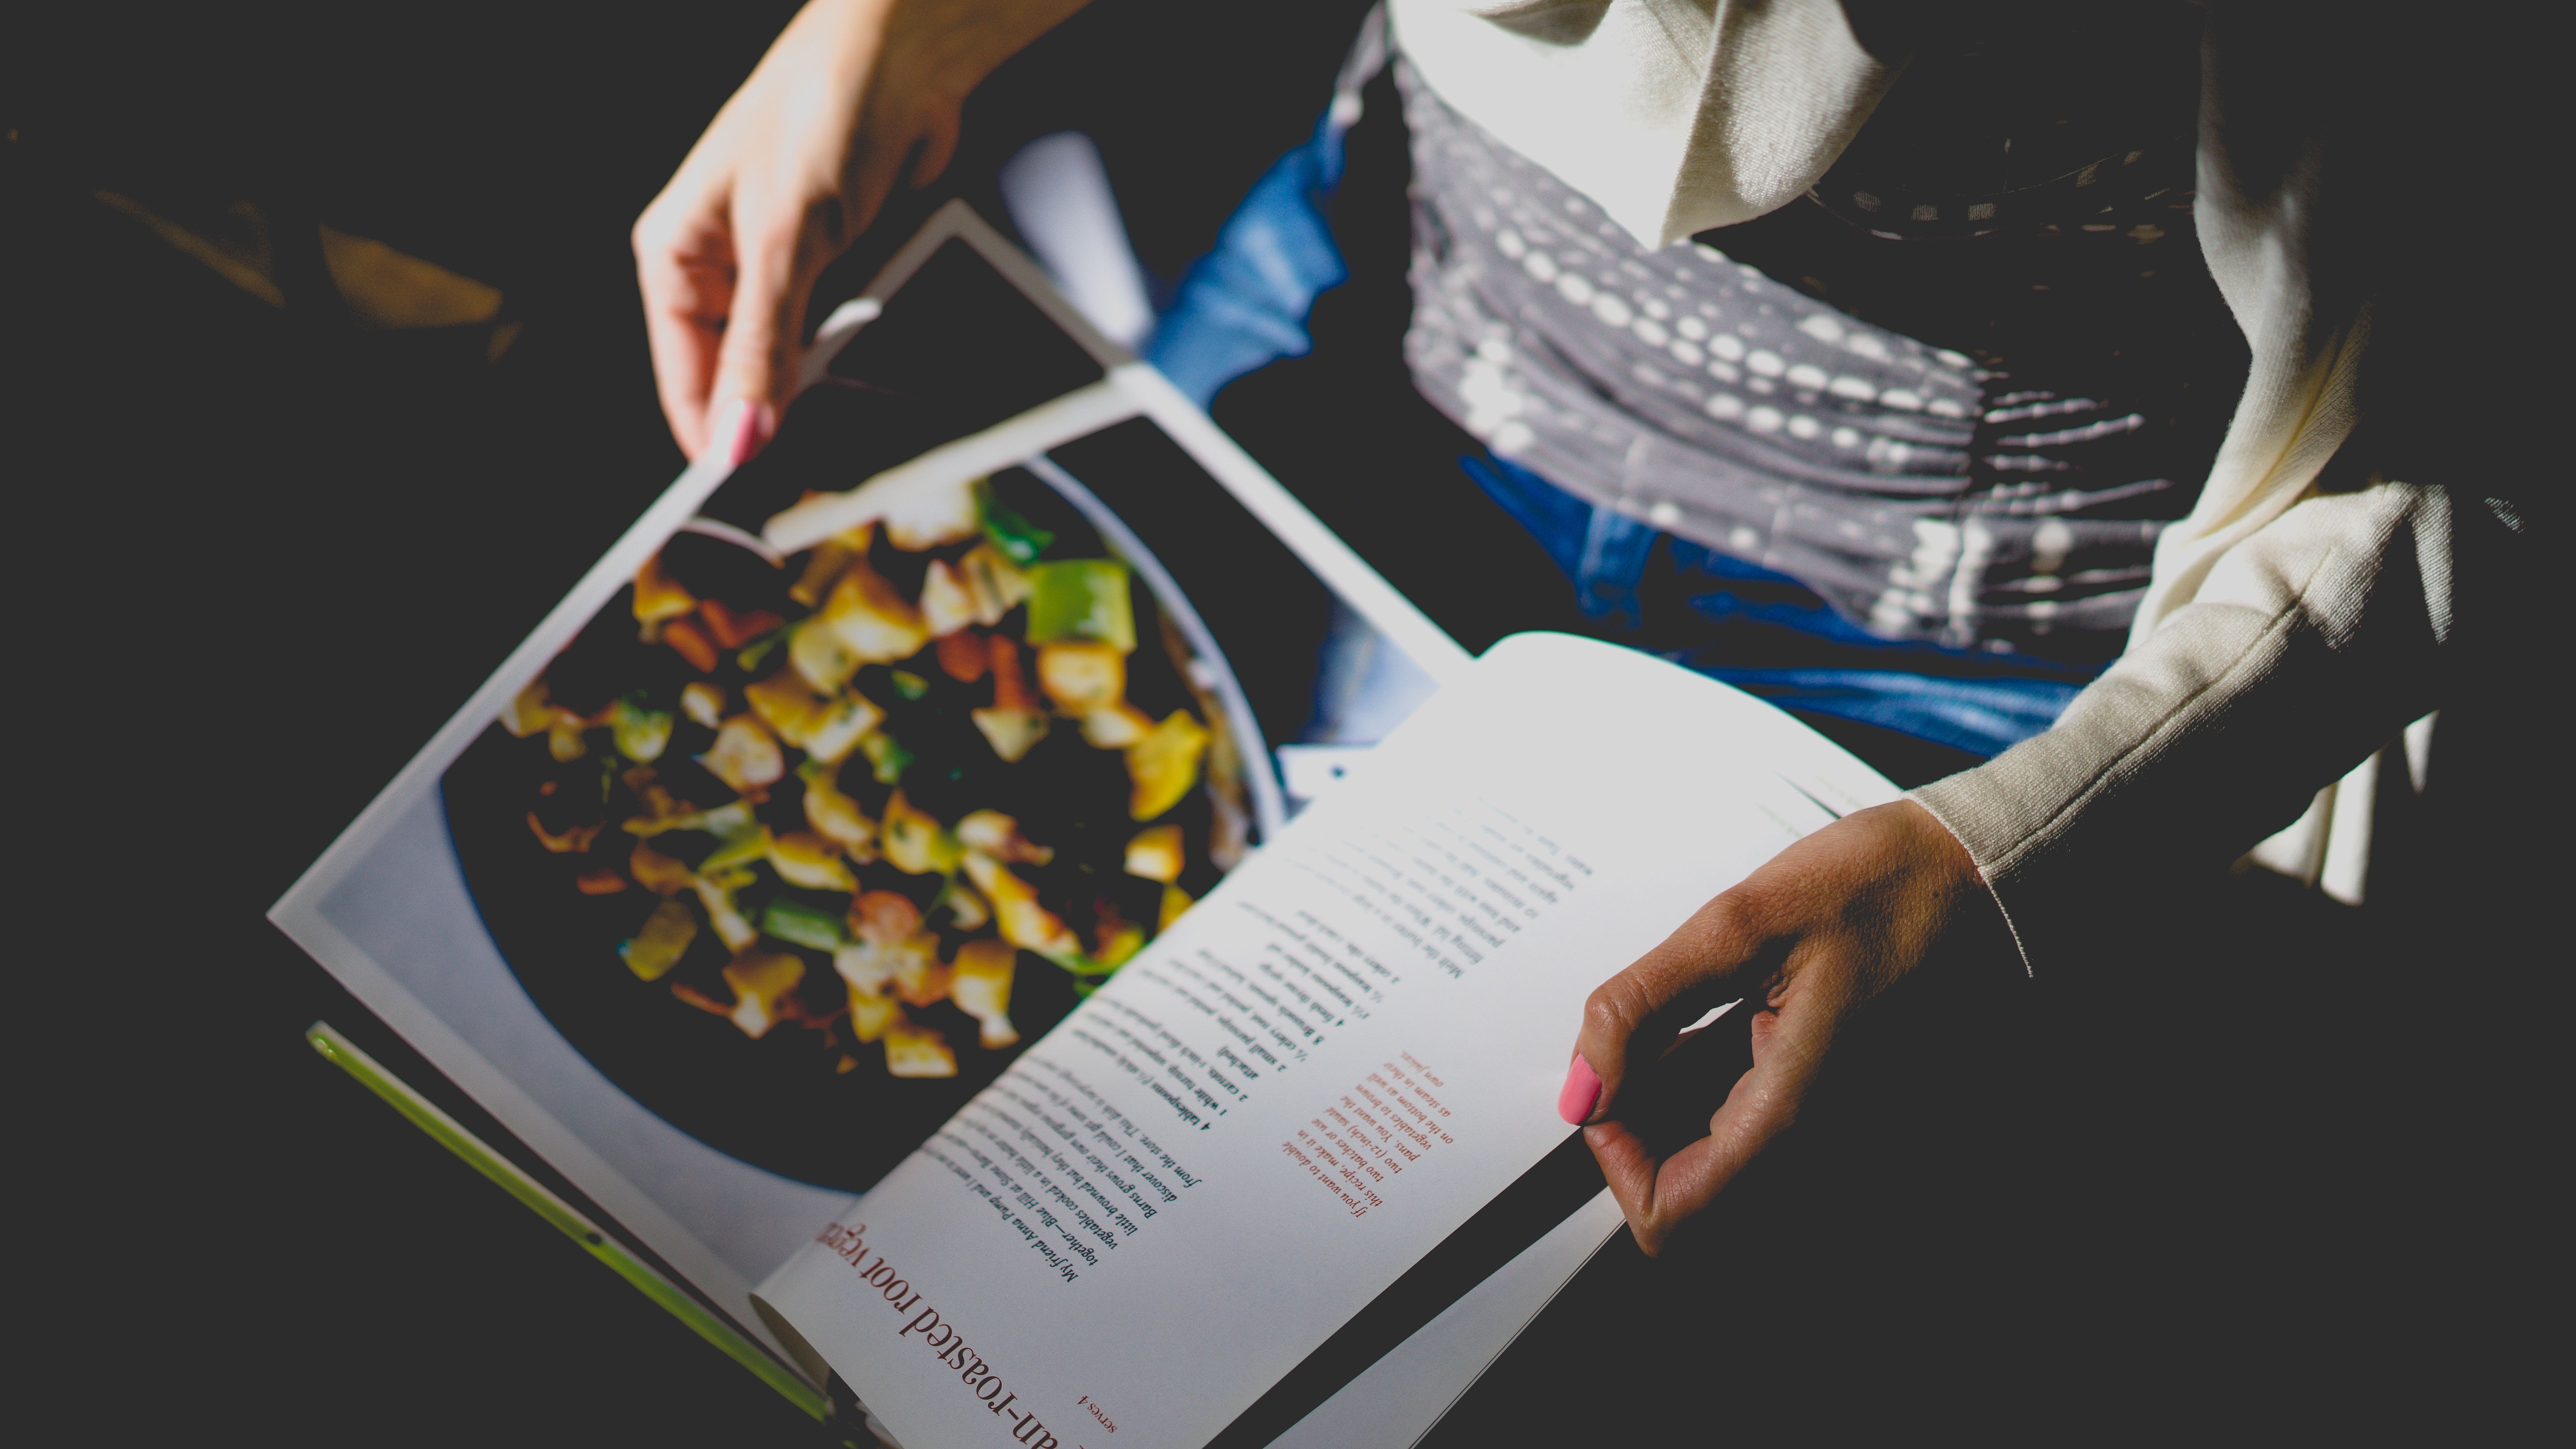 Recipes make a great mini photobook idea